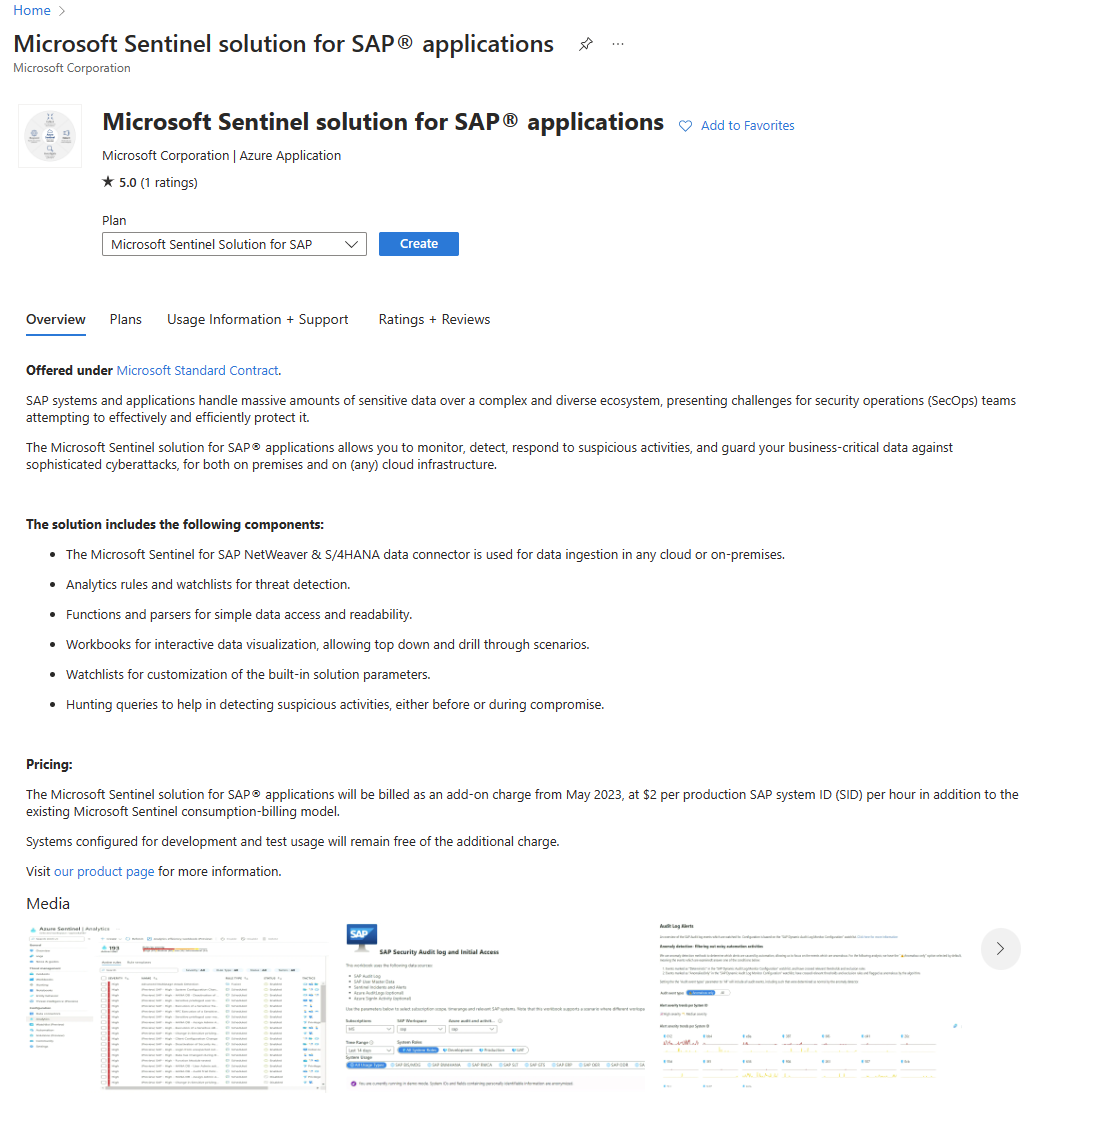 Captura de tela do painel da solução “Solução Microsoft Sentinel para SAP”.